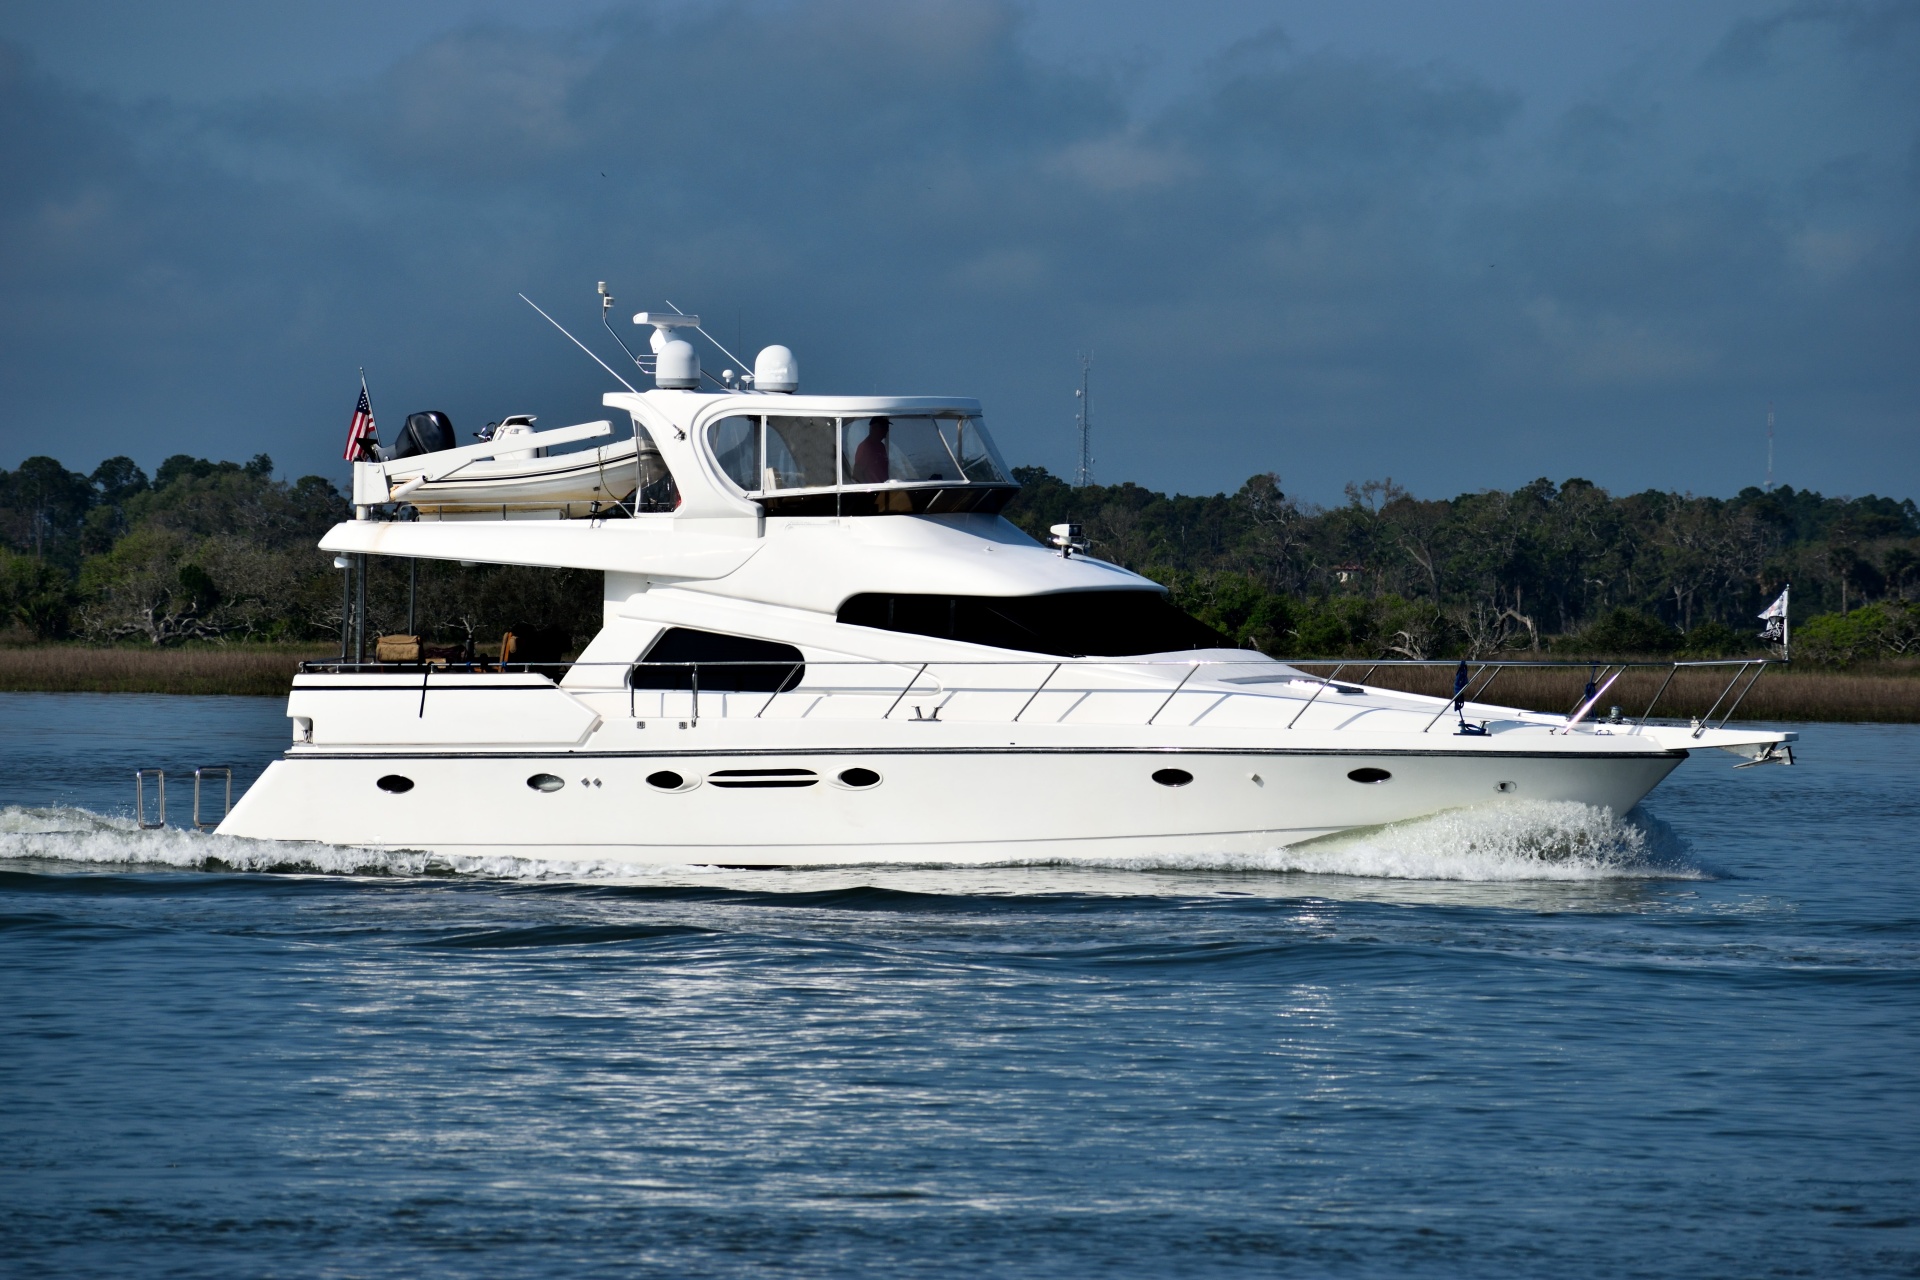 luxury yacht images free